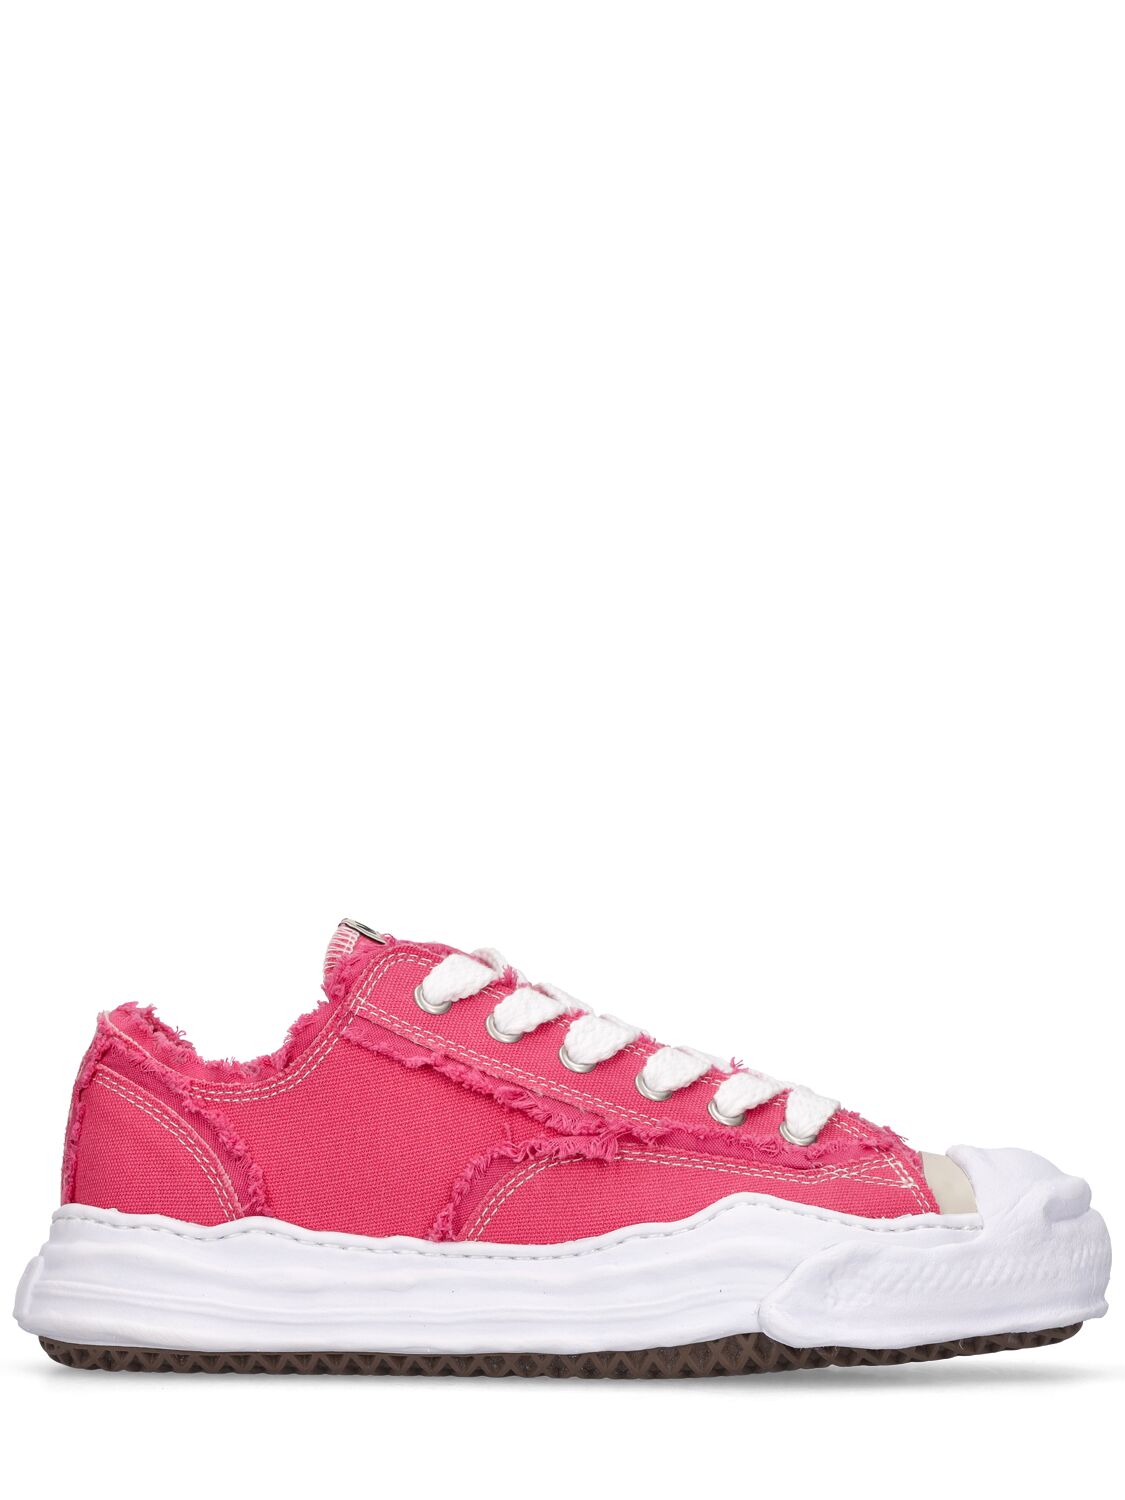 Miharayasuhiro Hank Low Top Sneakers In Pink